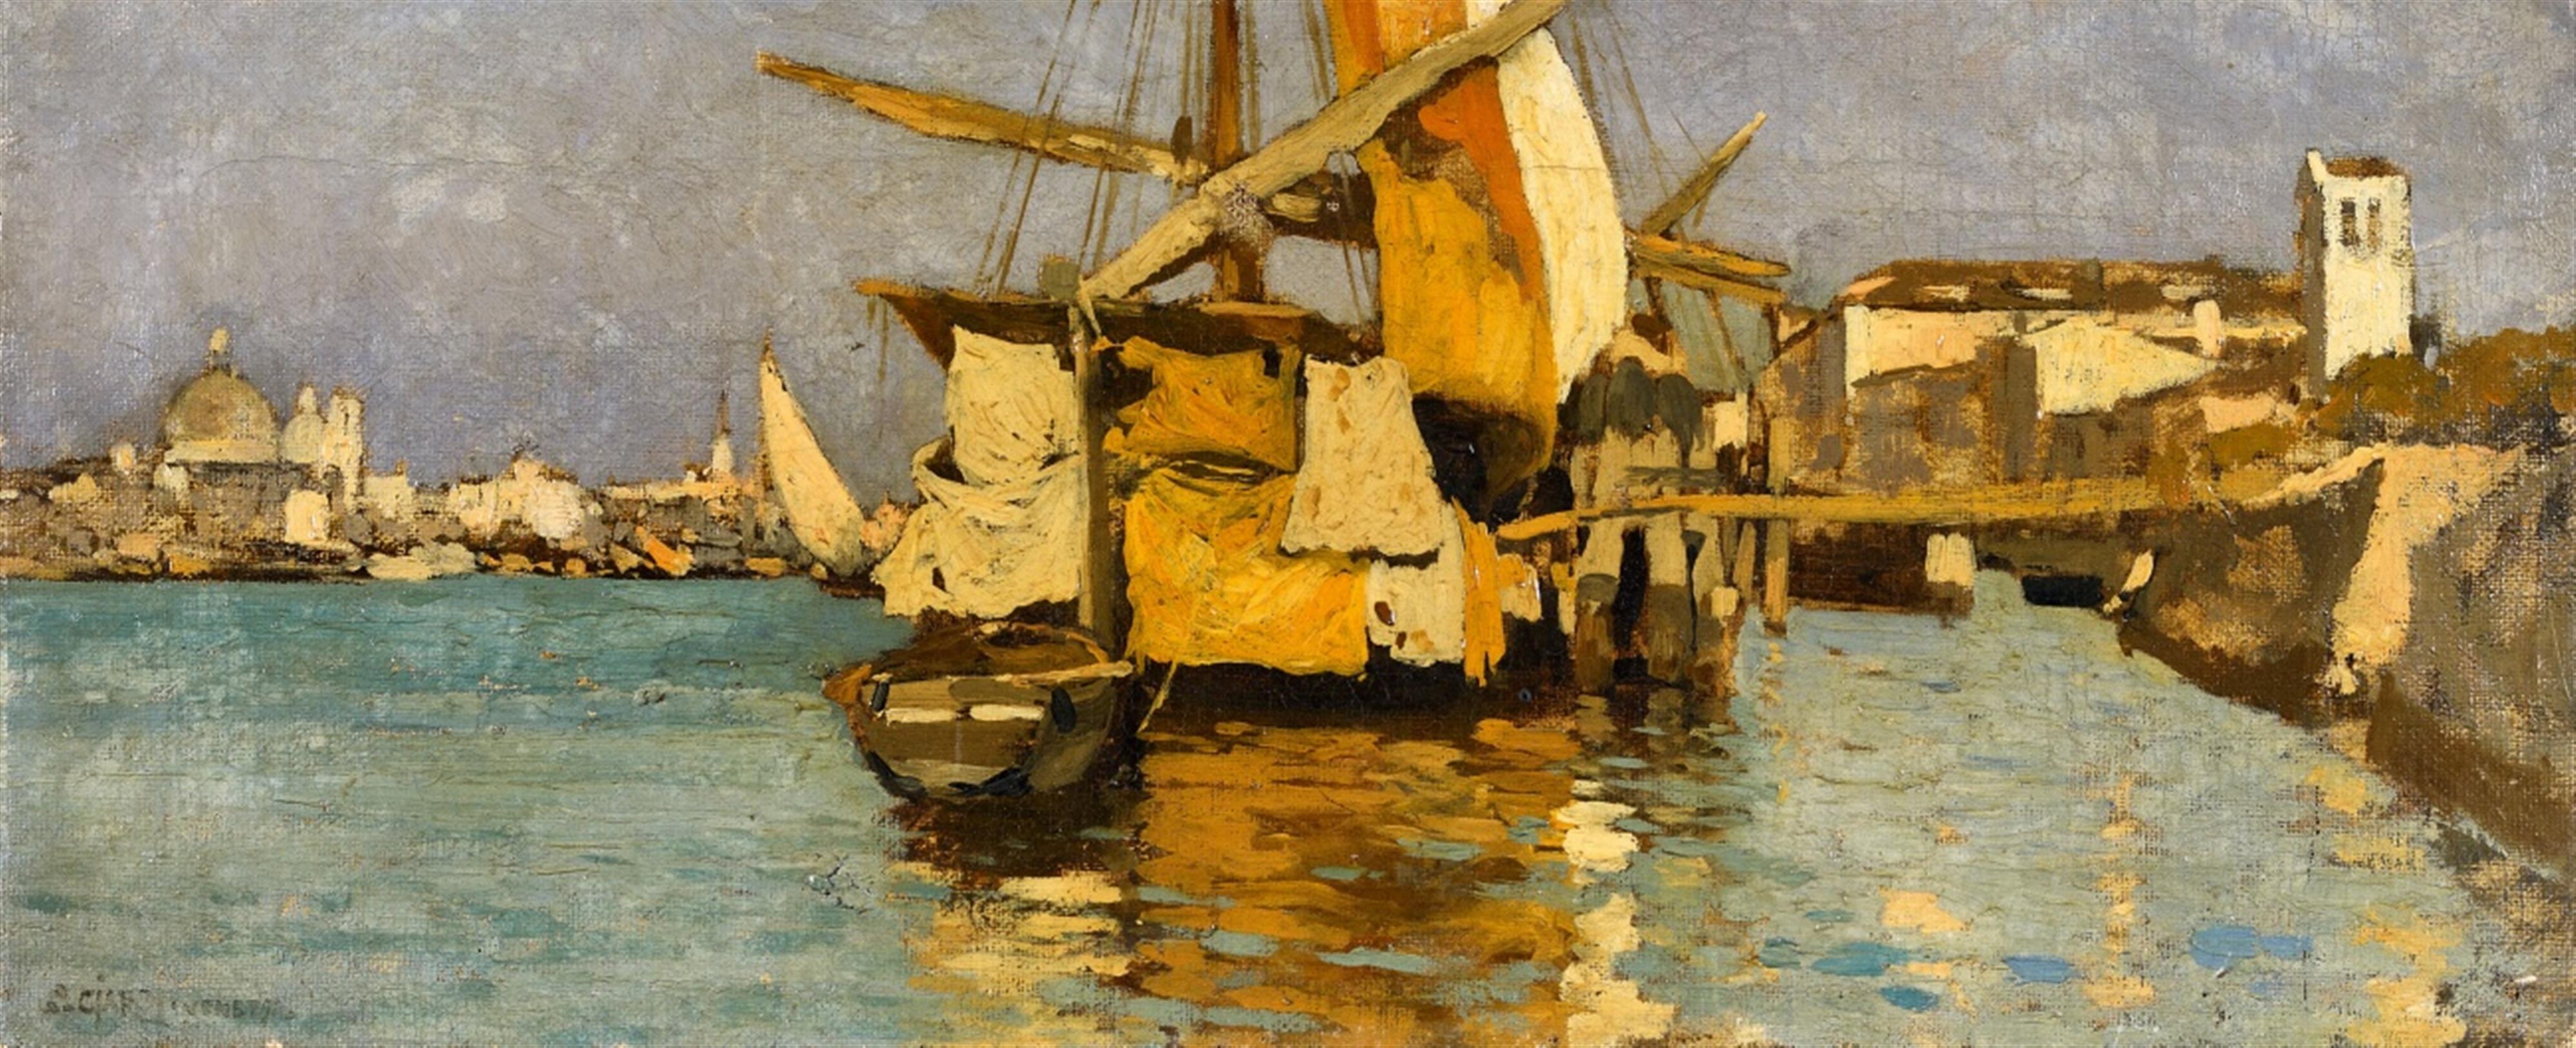 Guglielmo Ciardi - A Sailing Boat on the Canale della Giudecca - image-1